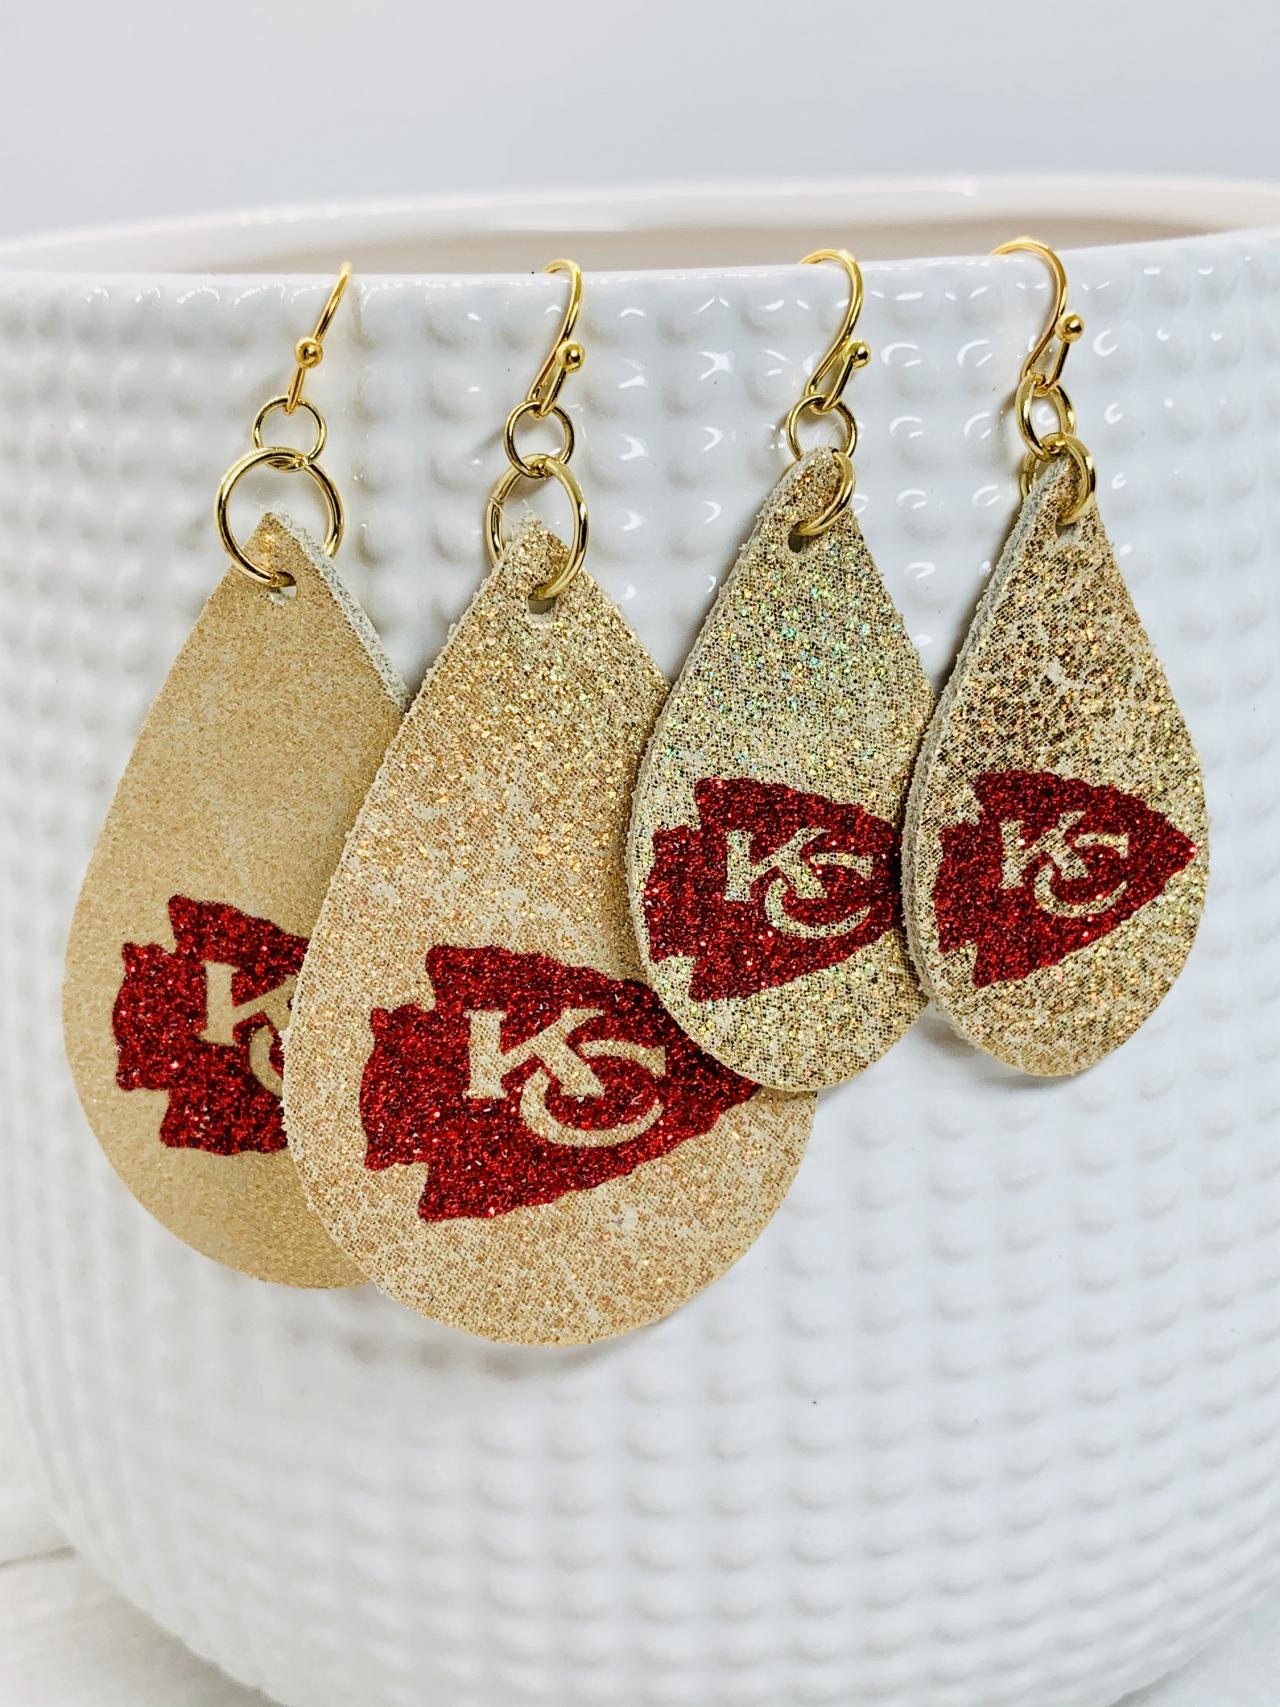 Kc Chiefs Leather Earrings| Kc Chiefs Earrings | Chiefs Leather Earrings | Chiefs Earrings | Leather Earrings